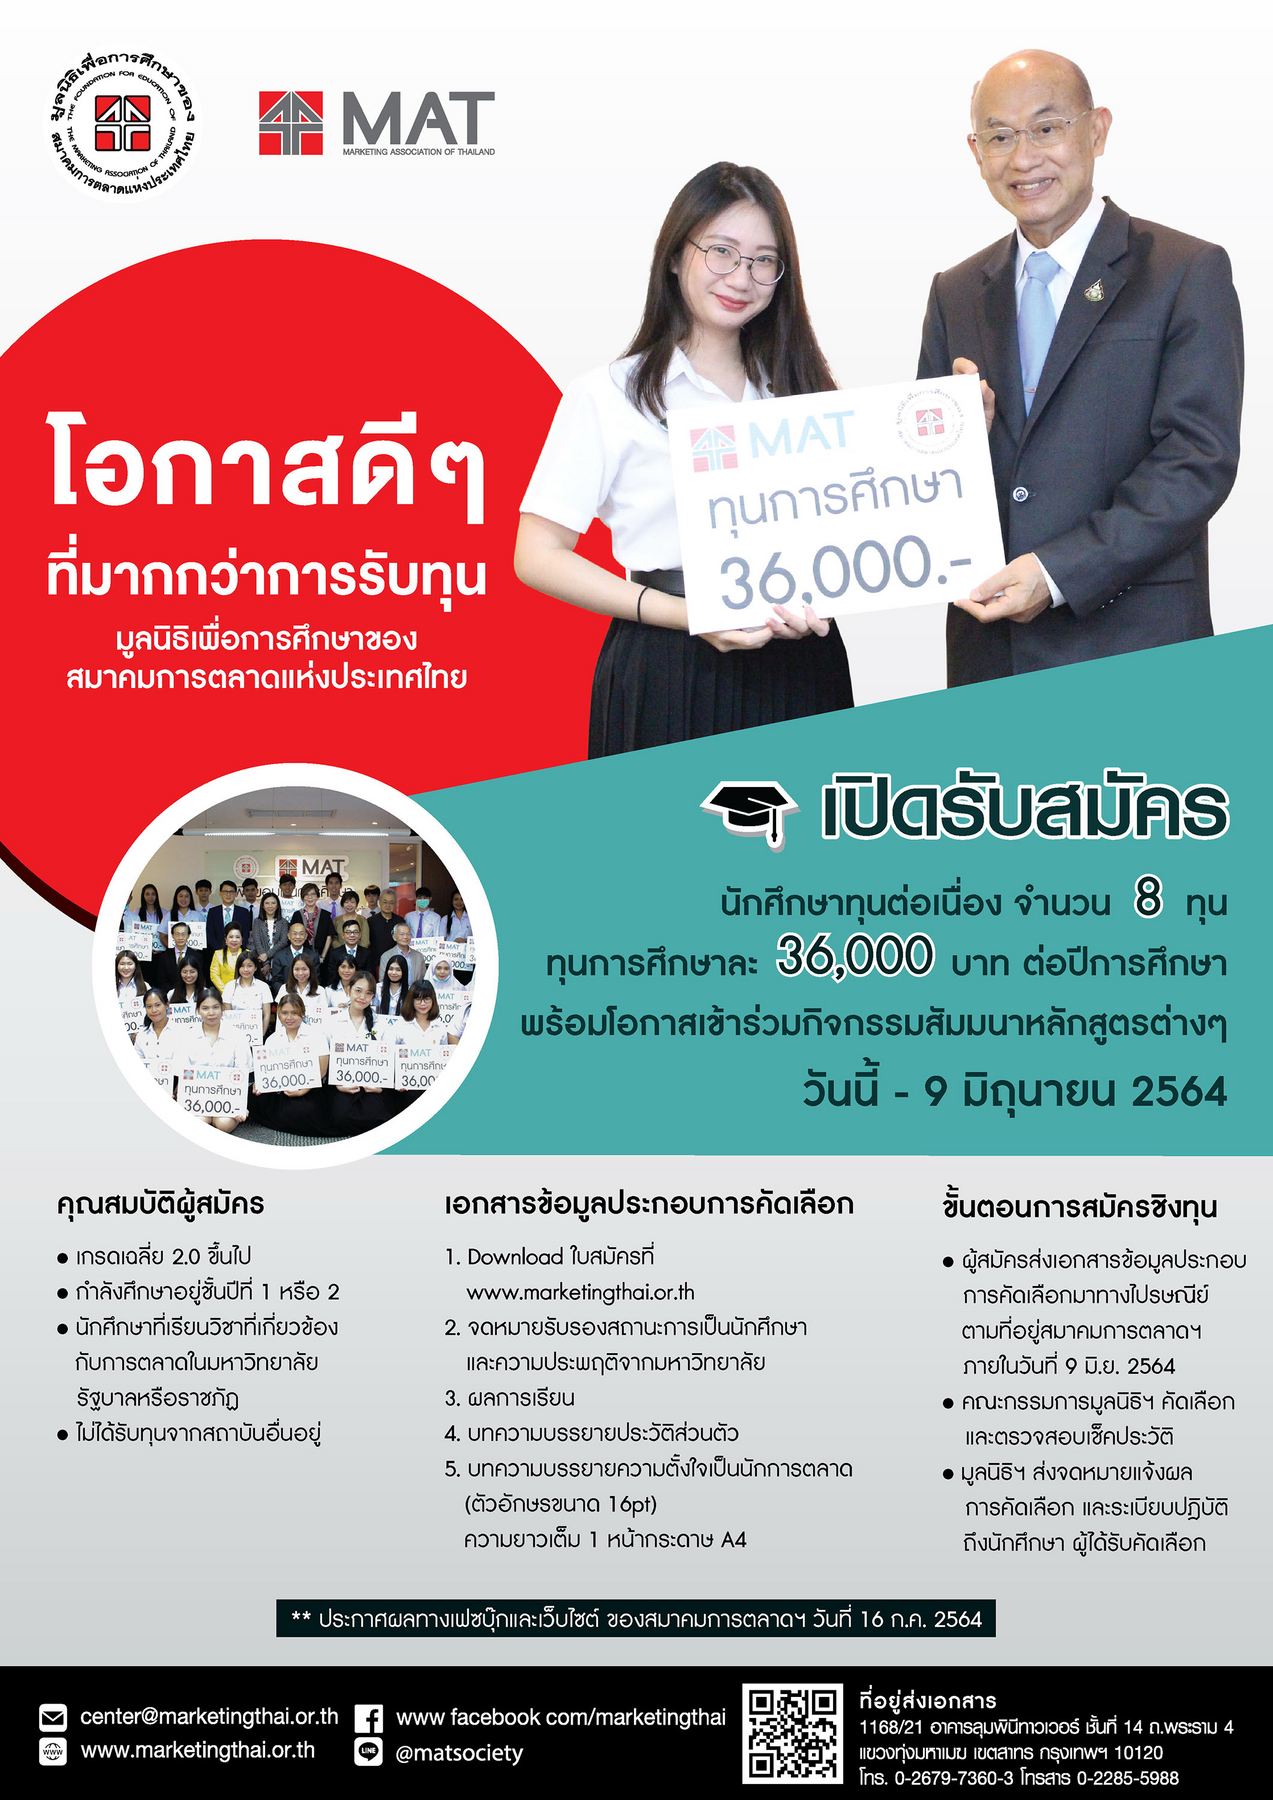 มูลนิธิเพื่อการศึกษาของสมาคมการตลาดแห่งประเทศไทย เปิดรับสมัครนักศึกษาทุนฯ